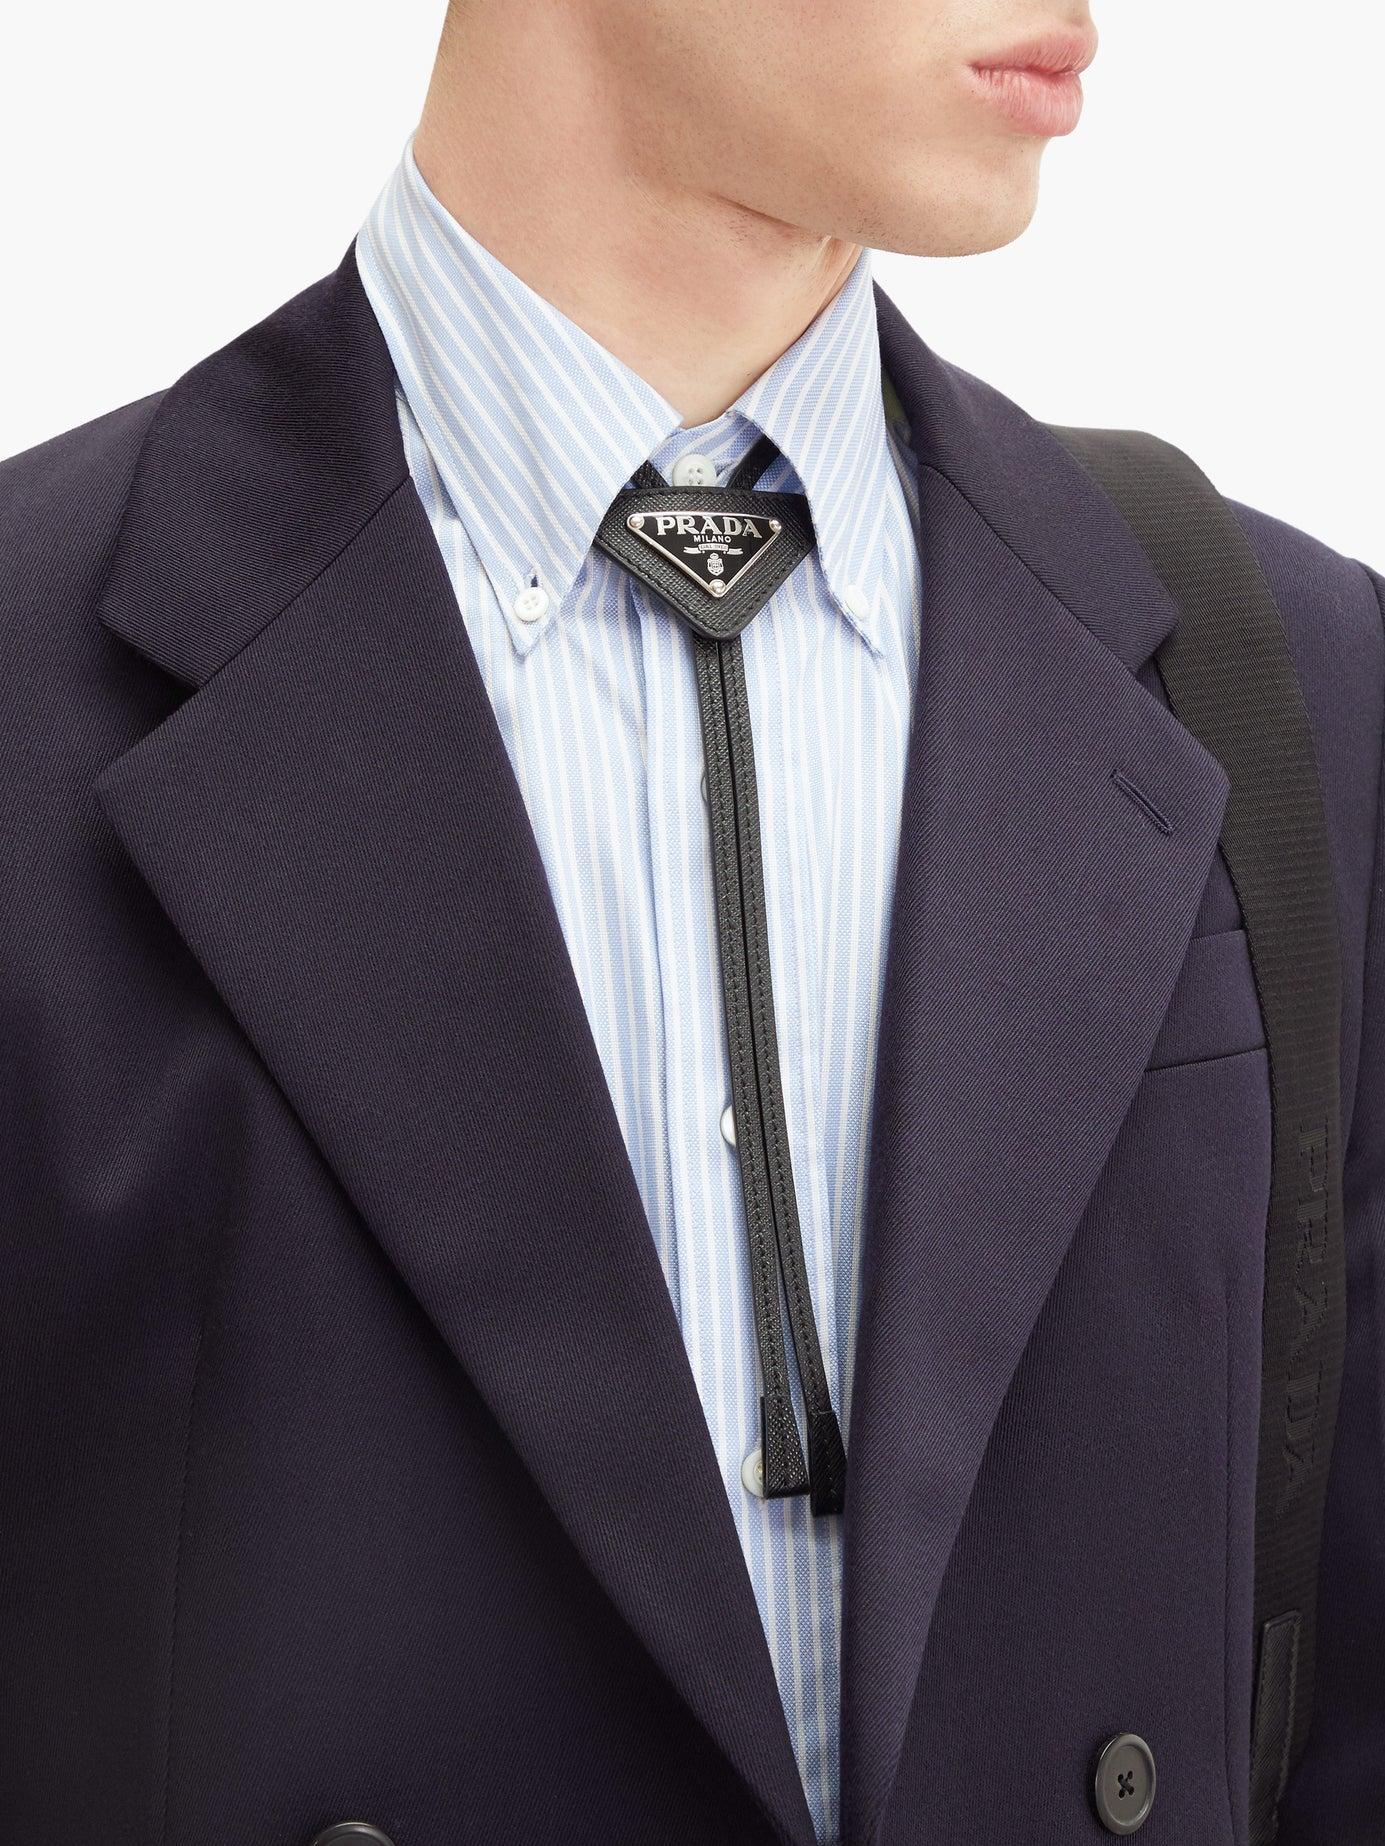 Triangle Bolo Tie in Black - Prada